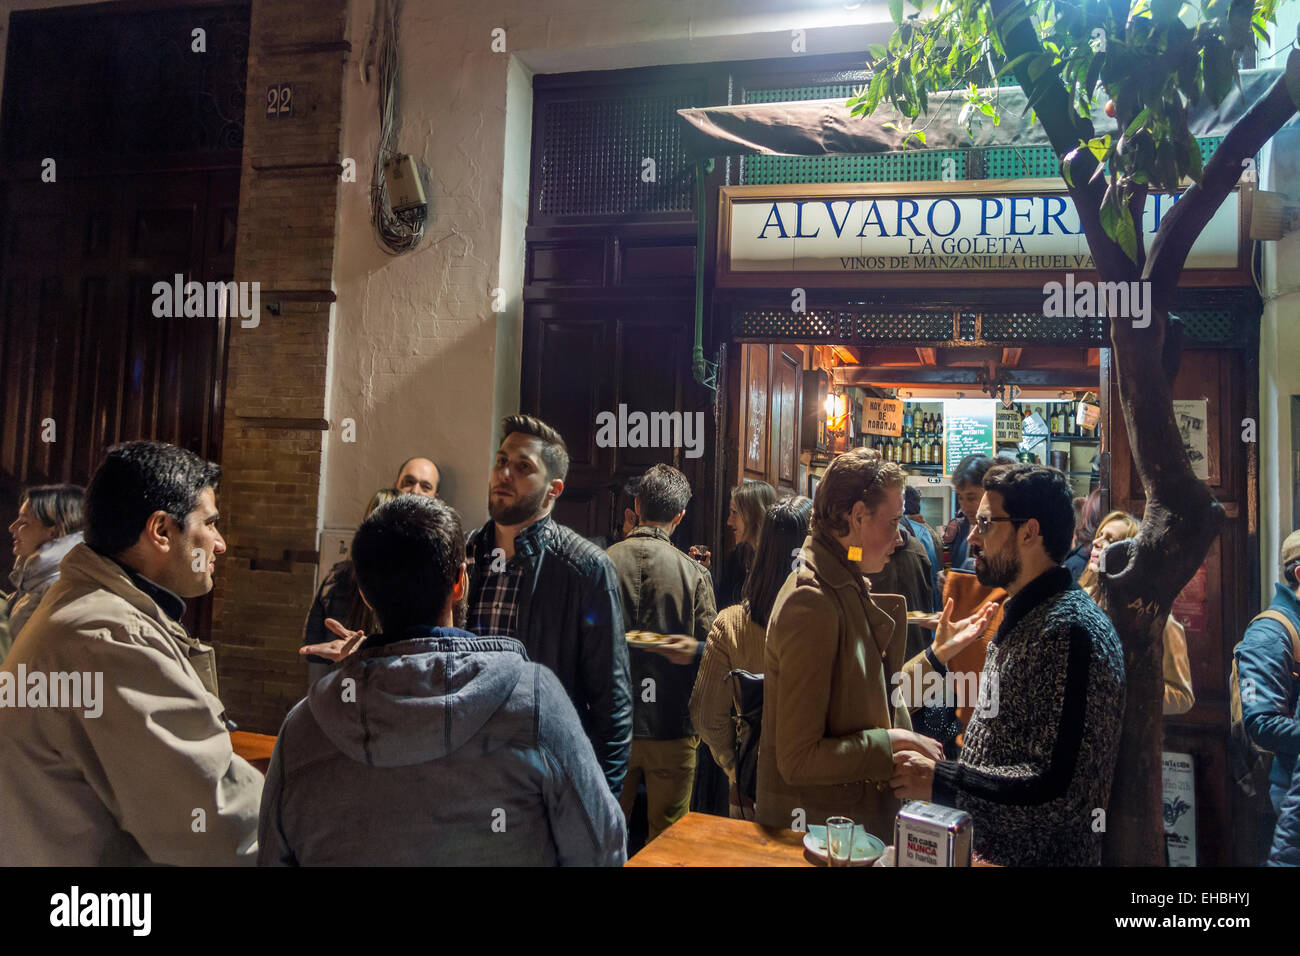 Tapas Restaurant Bar Alvaro Peregil in Sevilla, Sevilla, Spanien mit einem Hipster-Publikum am Tisch für draußen stehen. Auch bekannt als La Goleta. Stockfoto